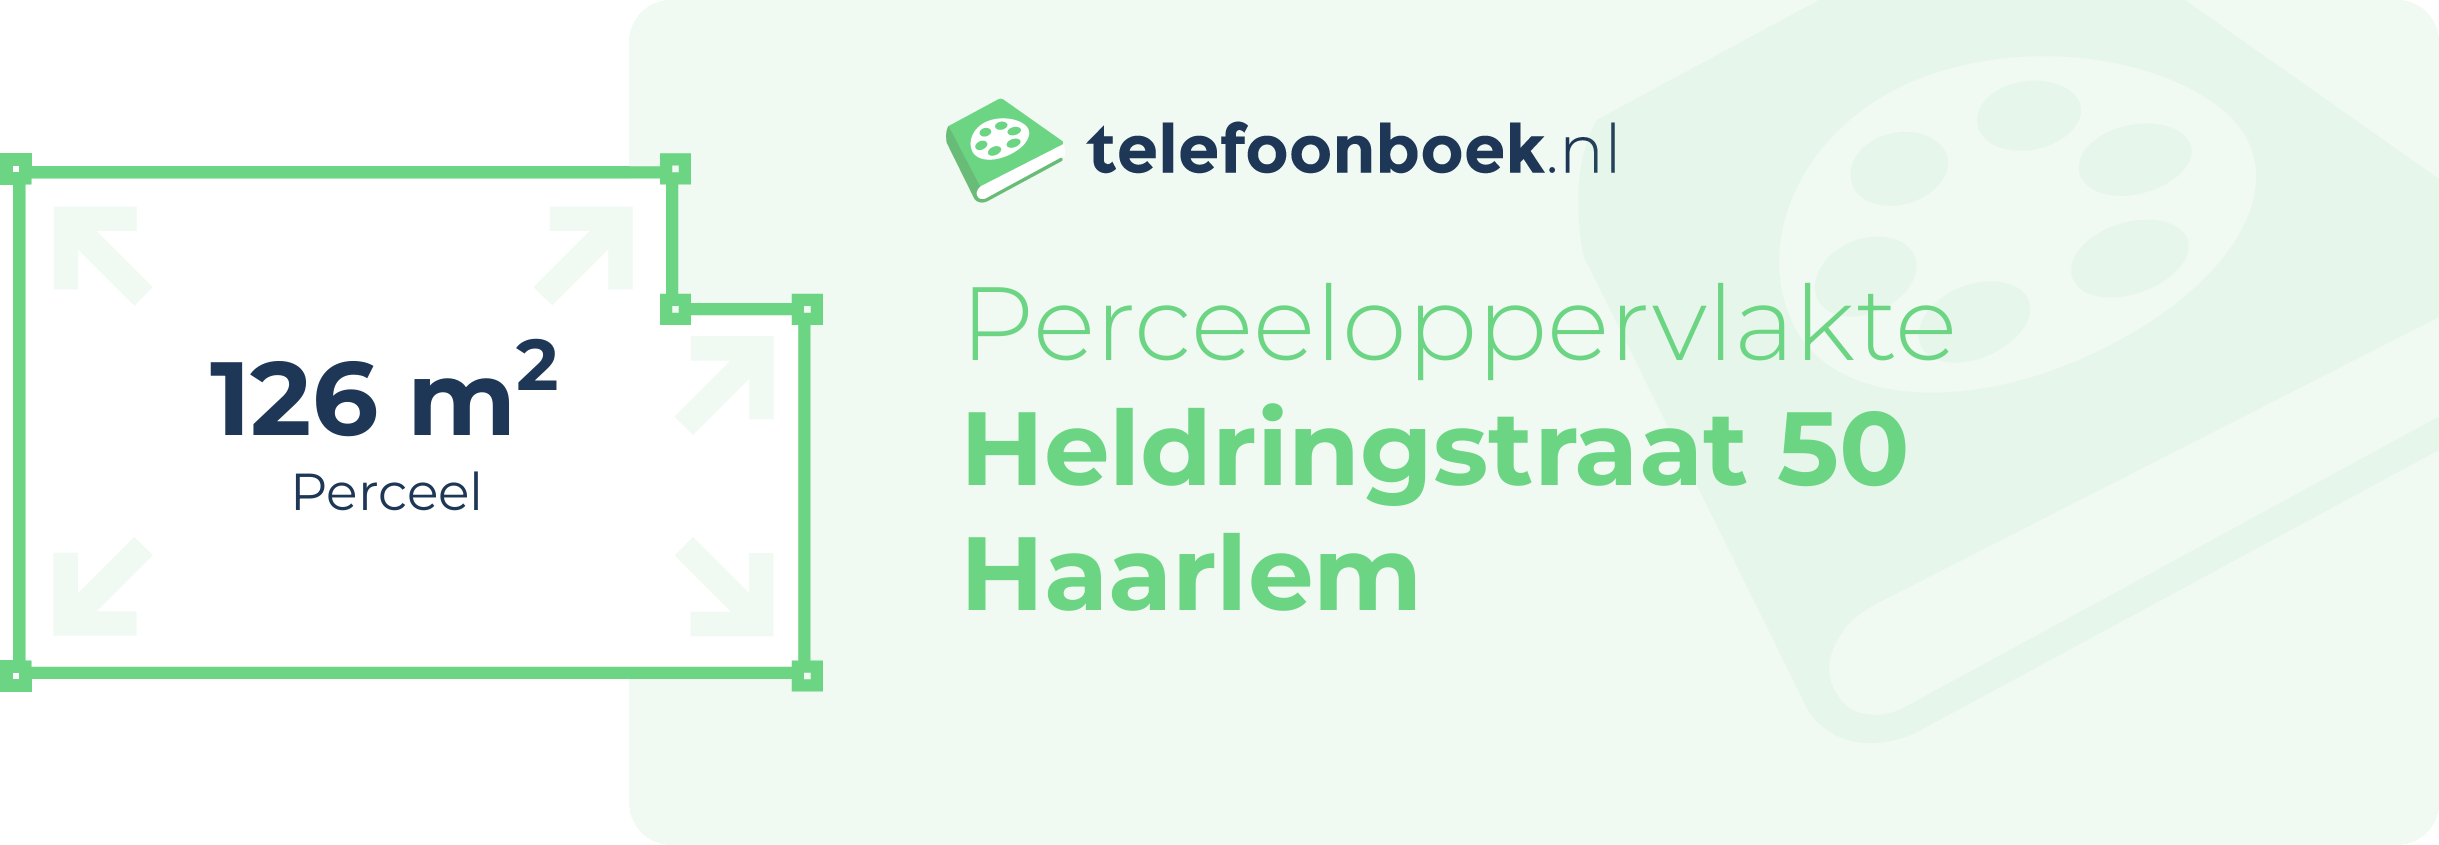 Perceeloppervlakte Heldringstraat 50 Haarlem